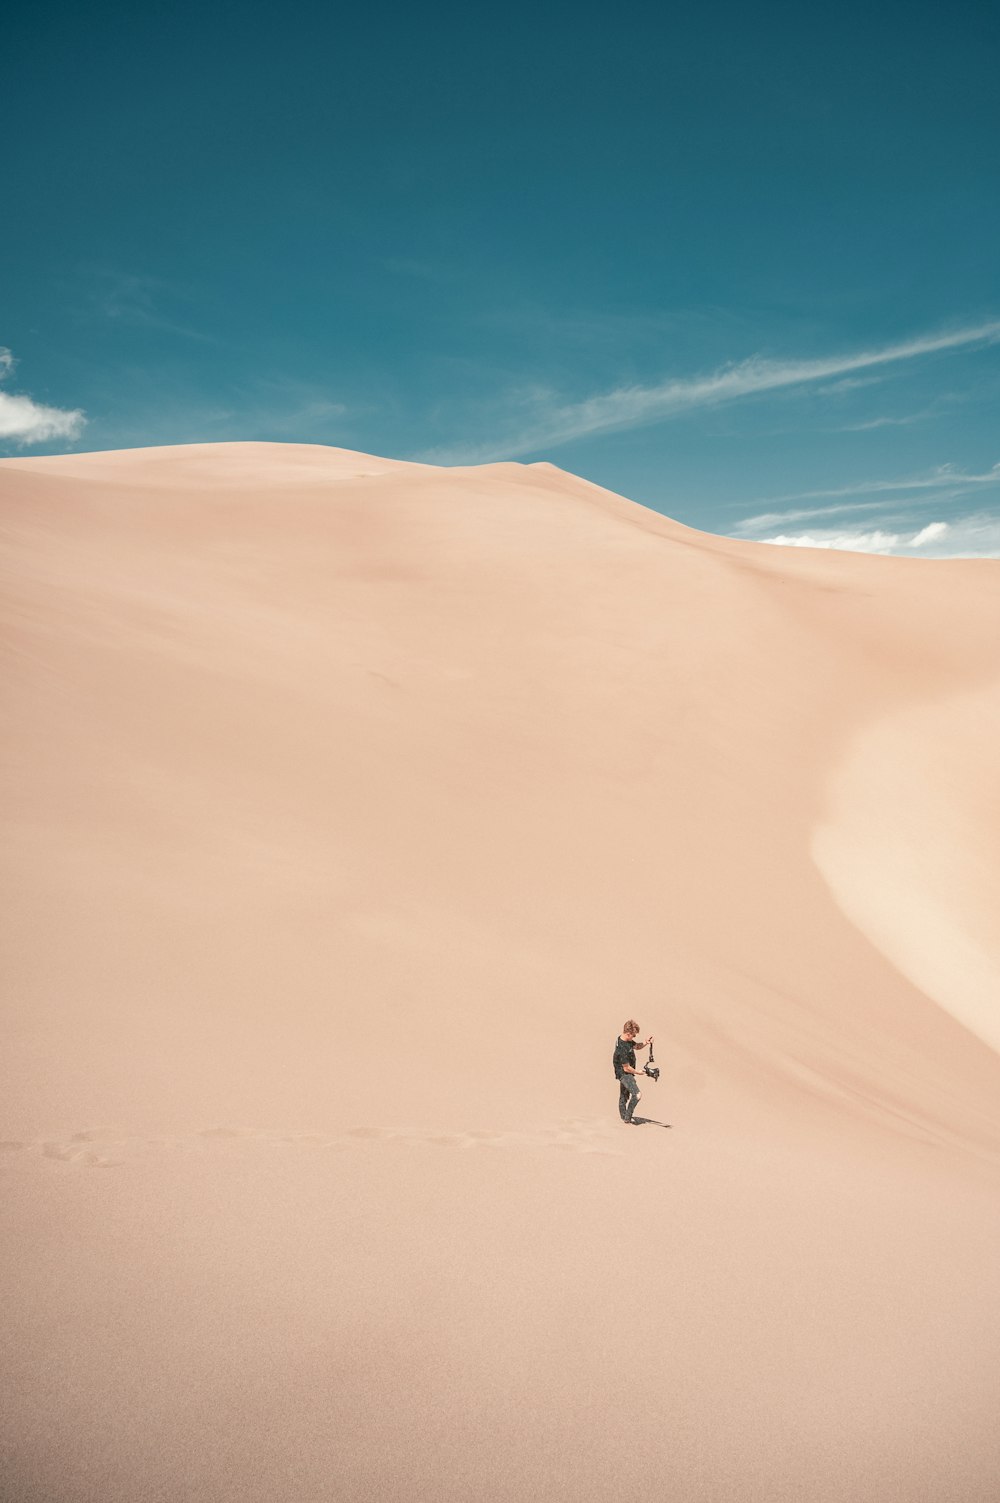 昼間の砂漠を歩く人